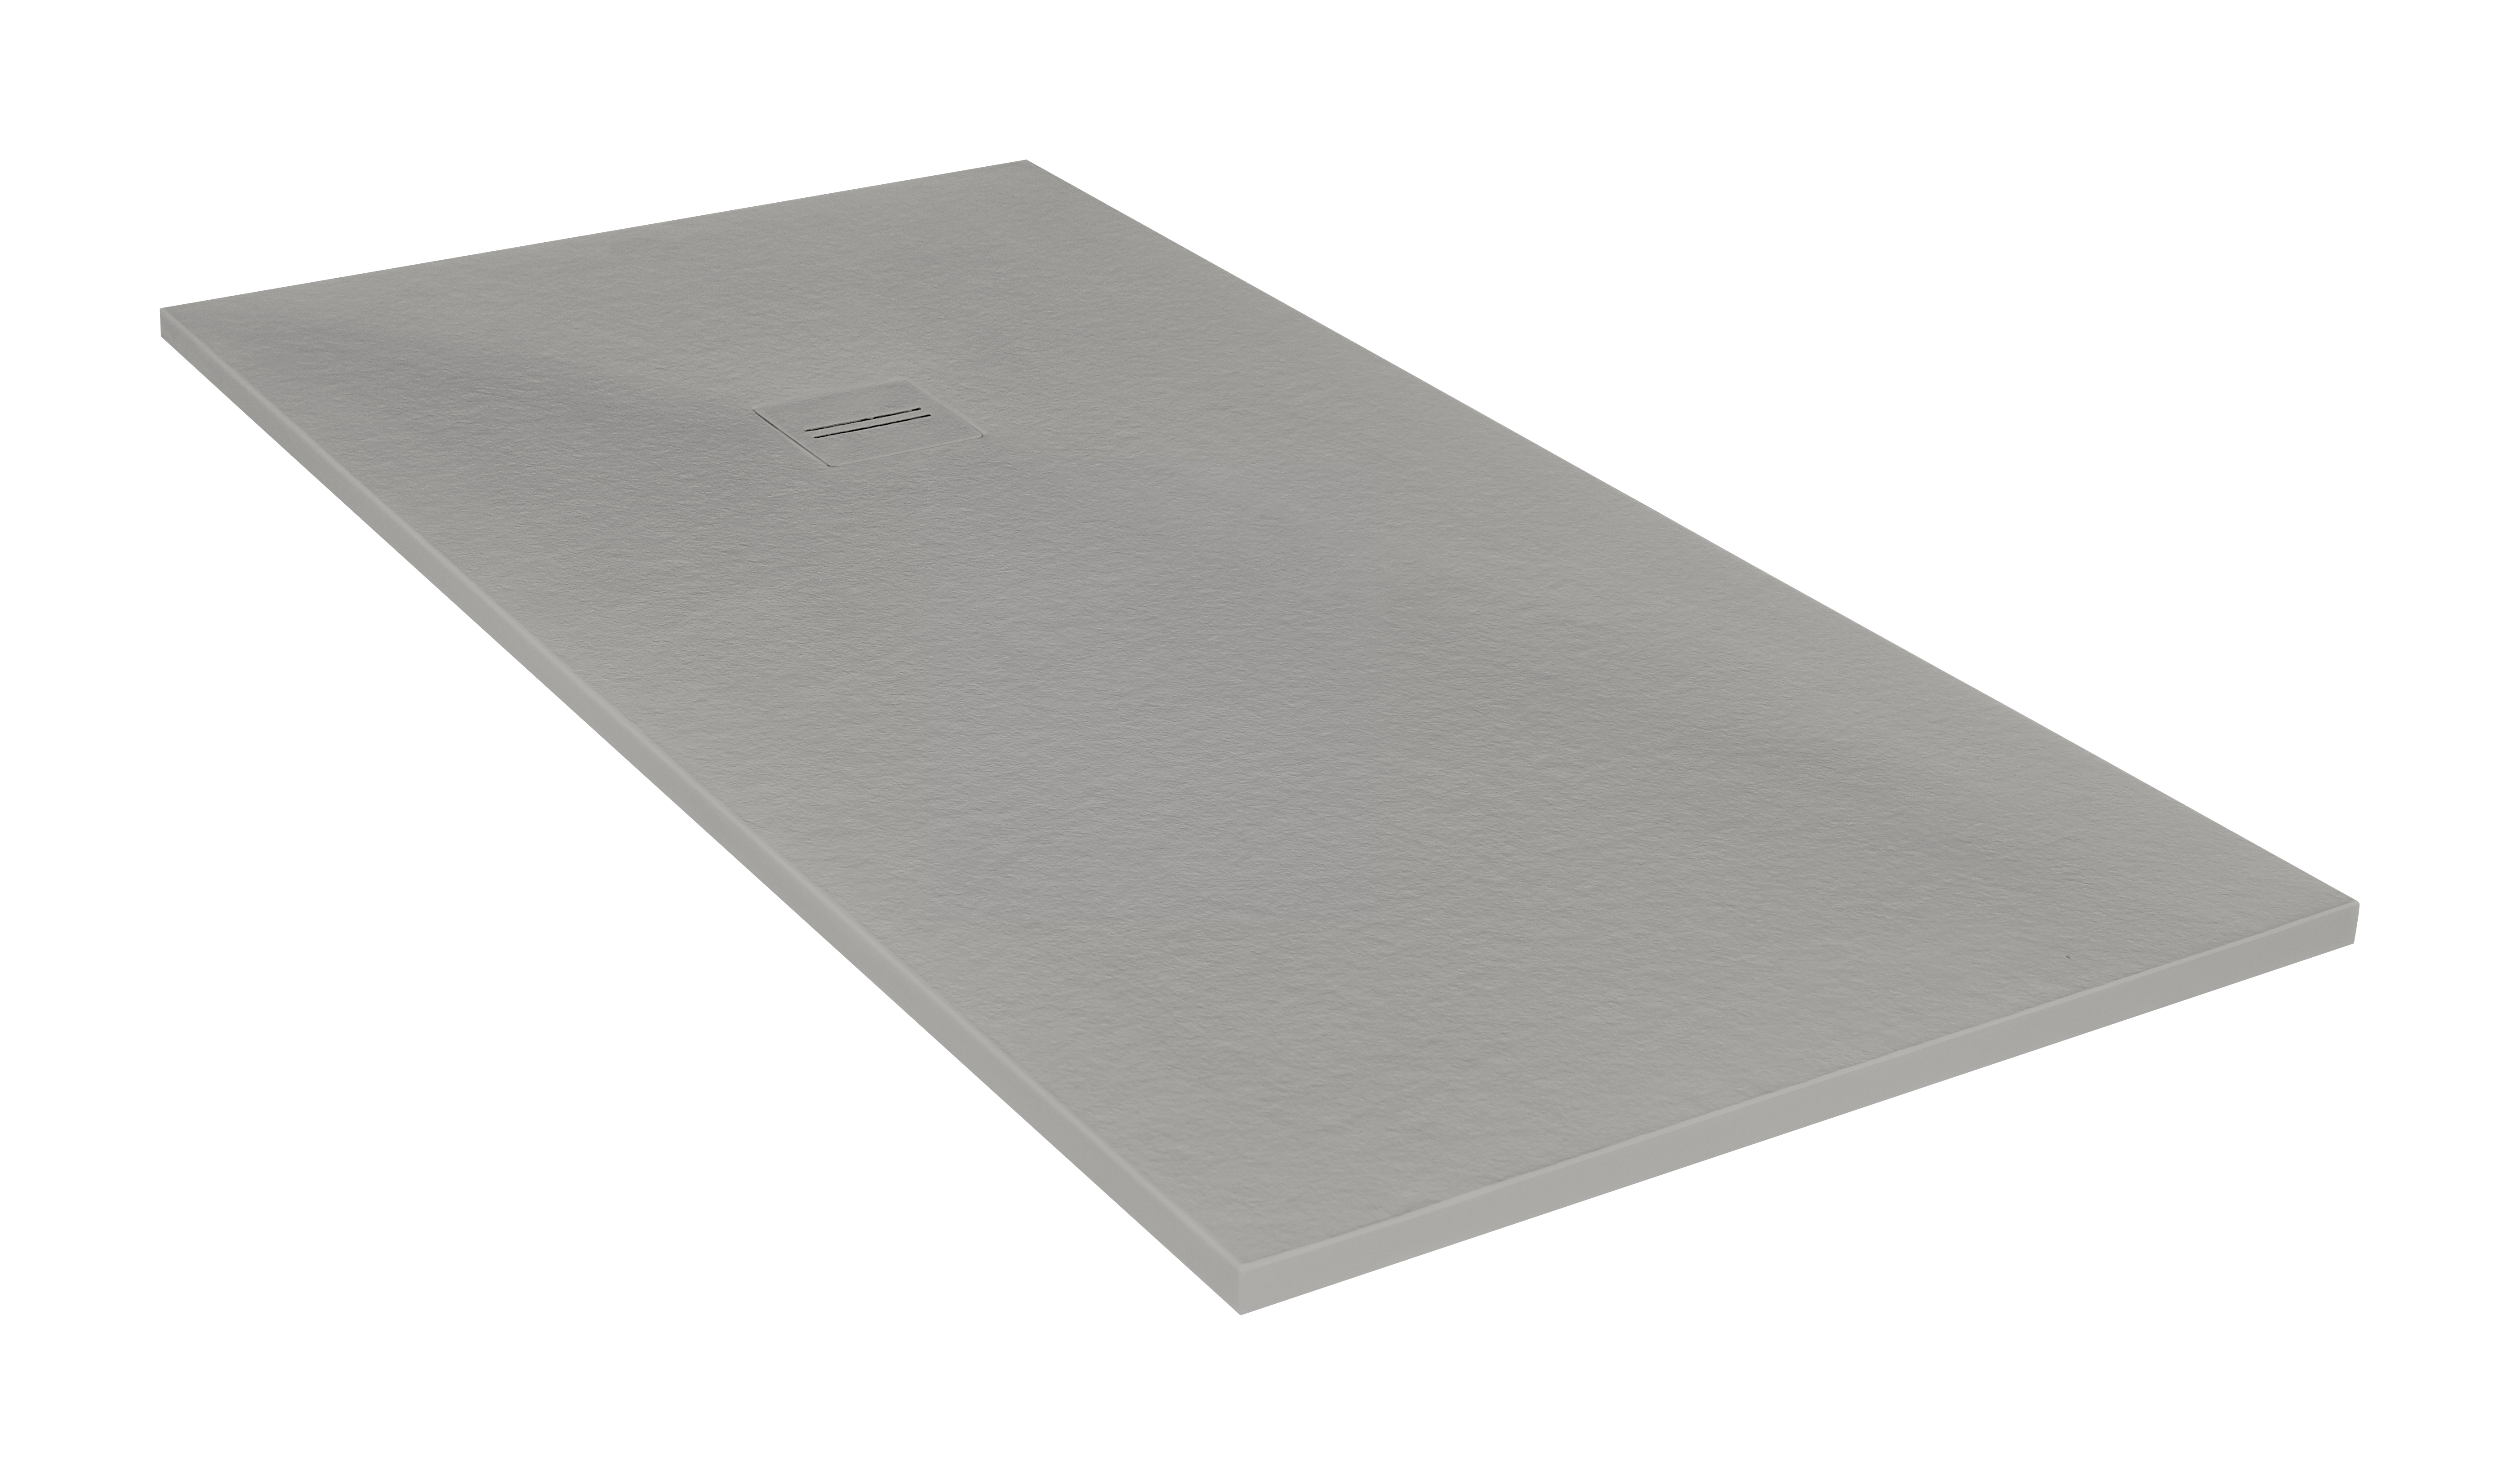 Plato de ducha cosmos 210x80 cm gris